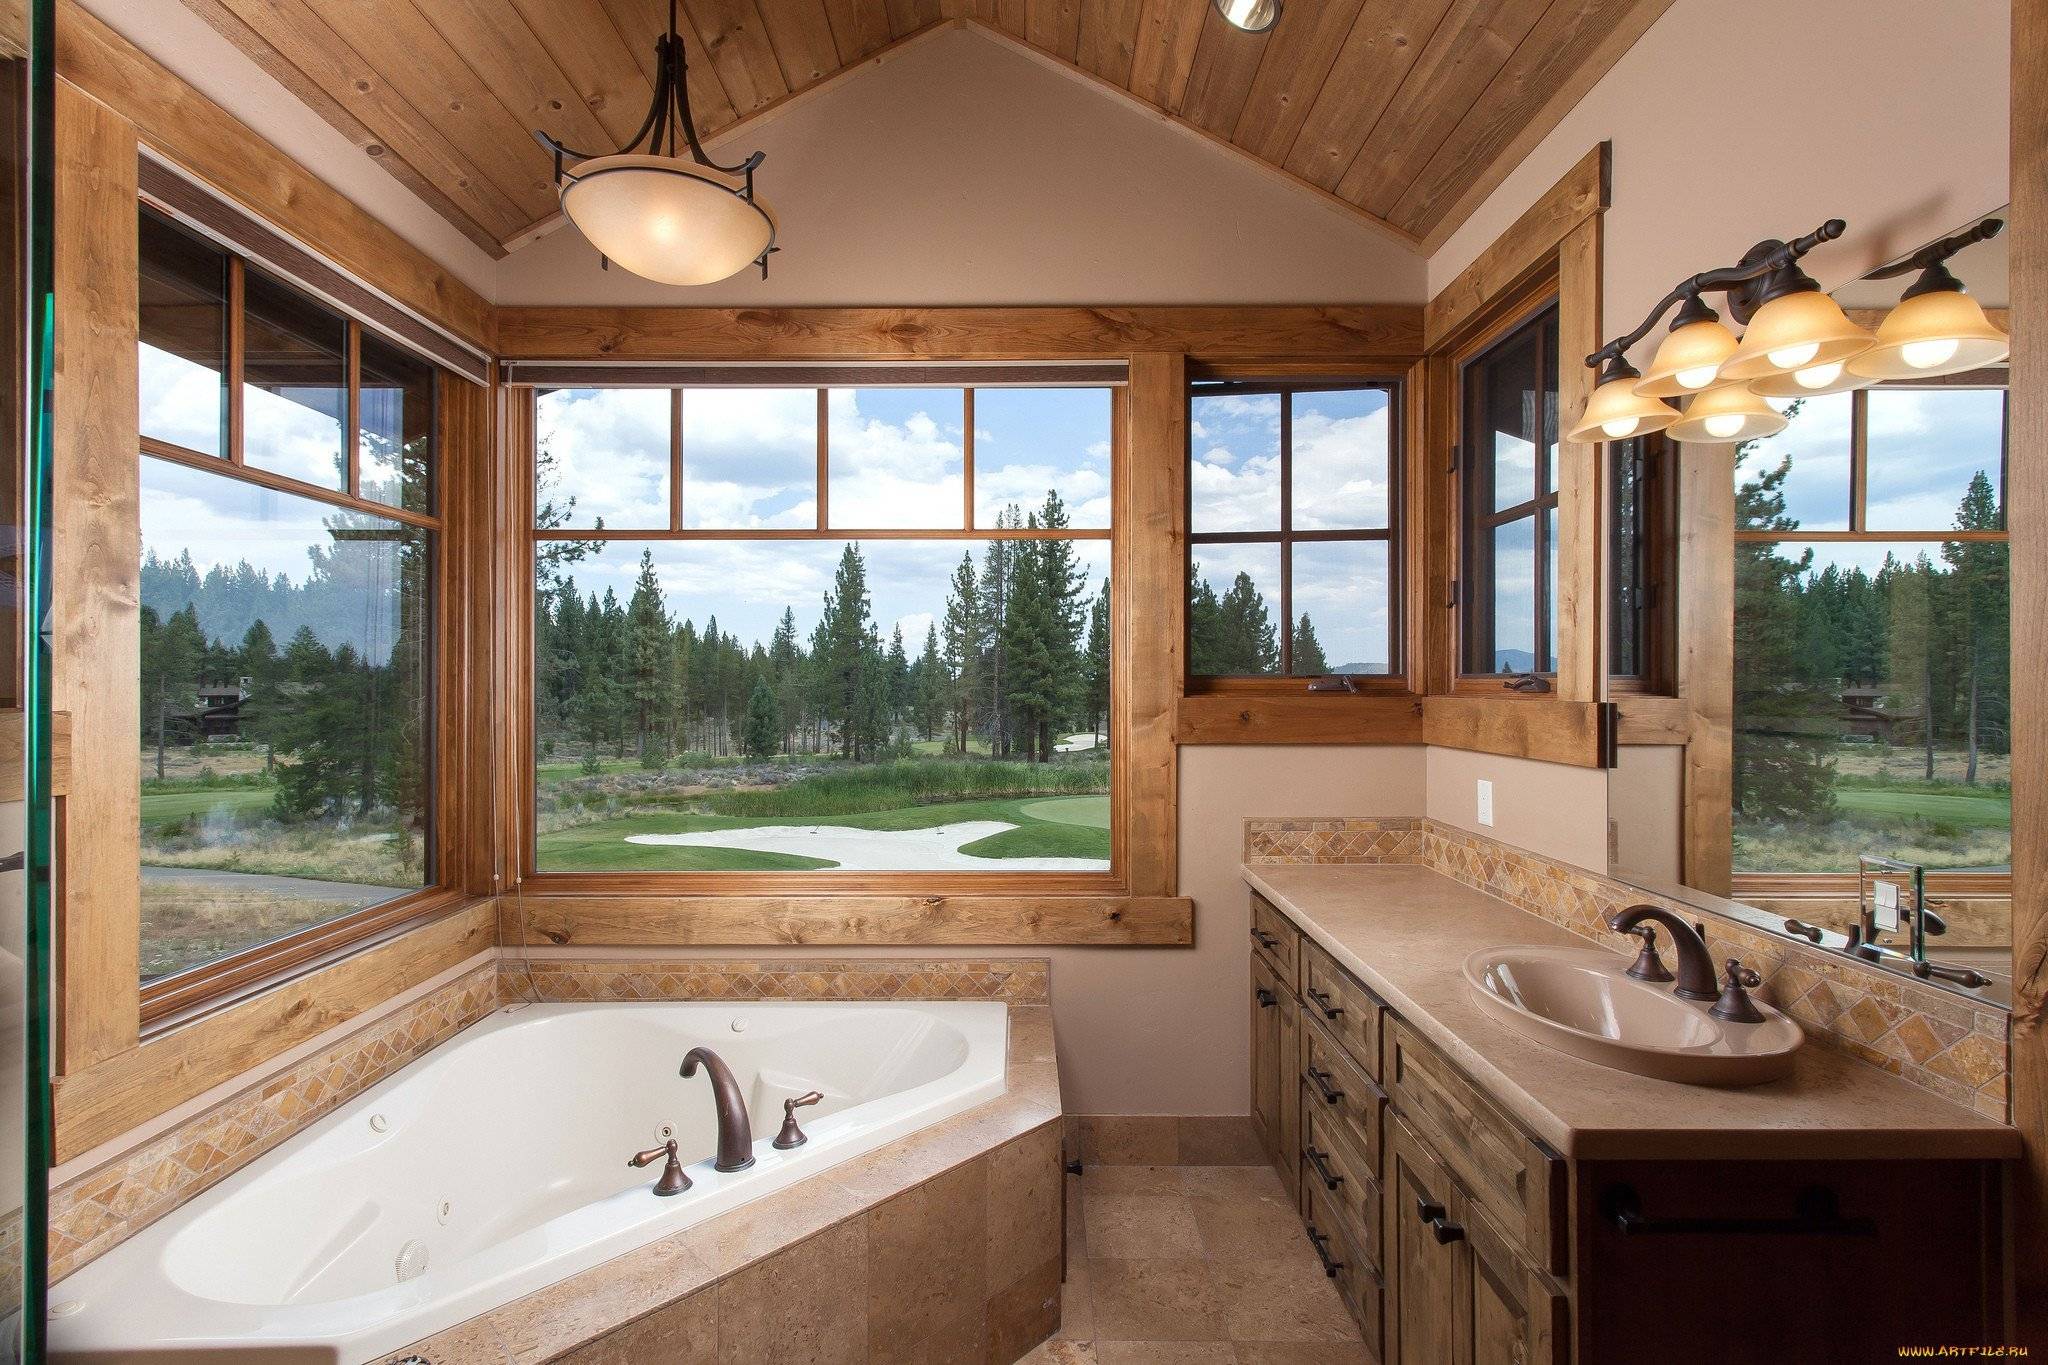 Окно в ванной комнате, дизайн - имитация и отделка окна на даче